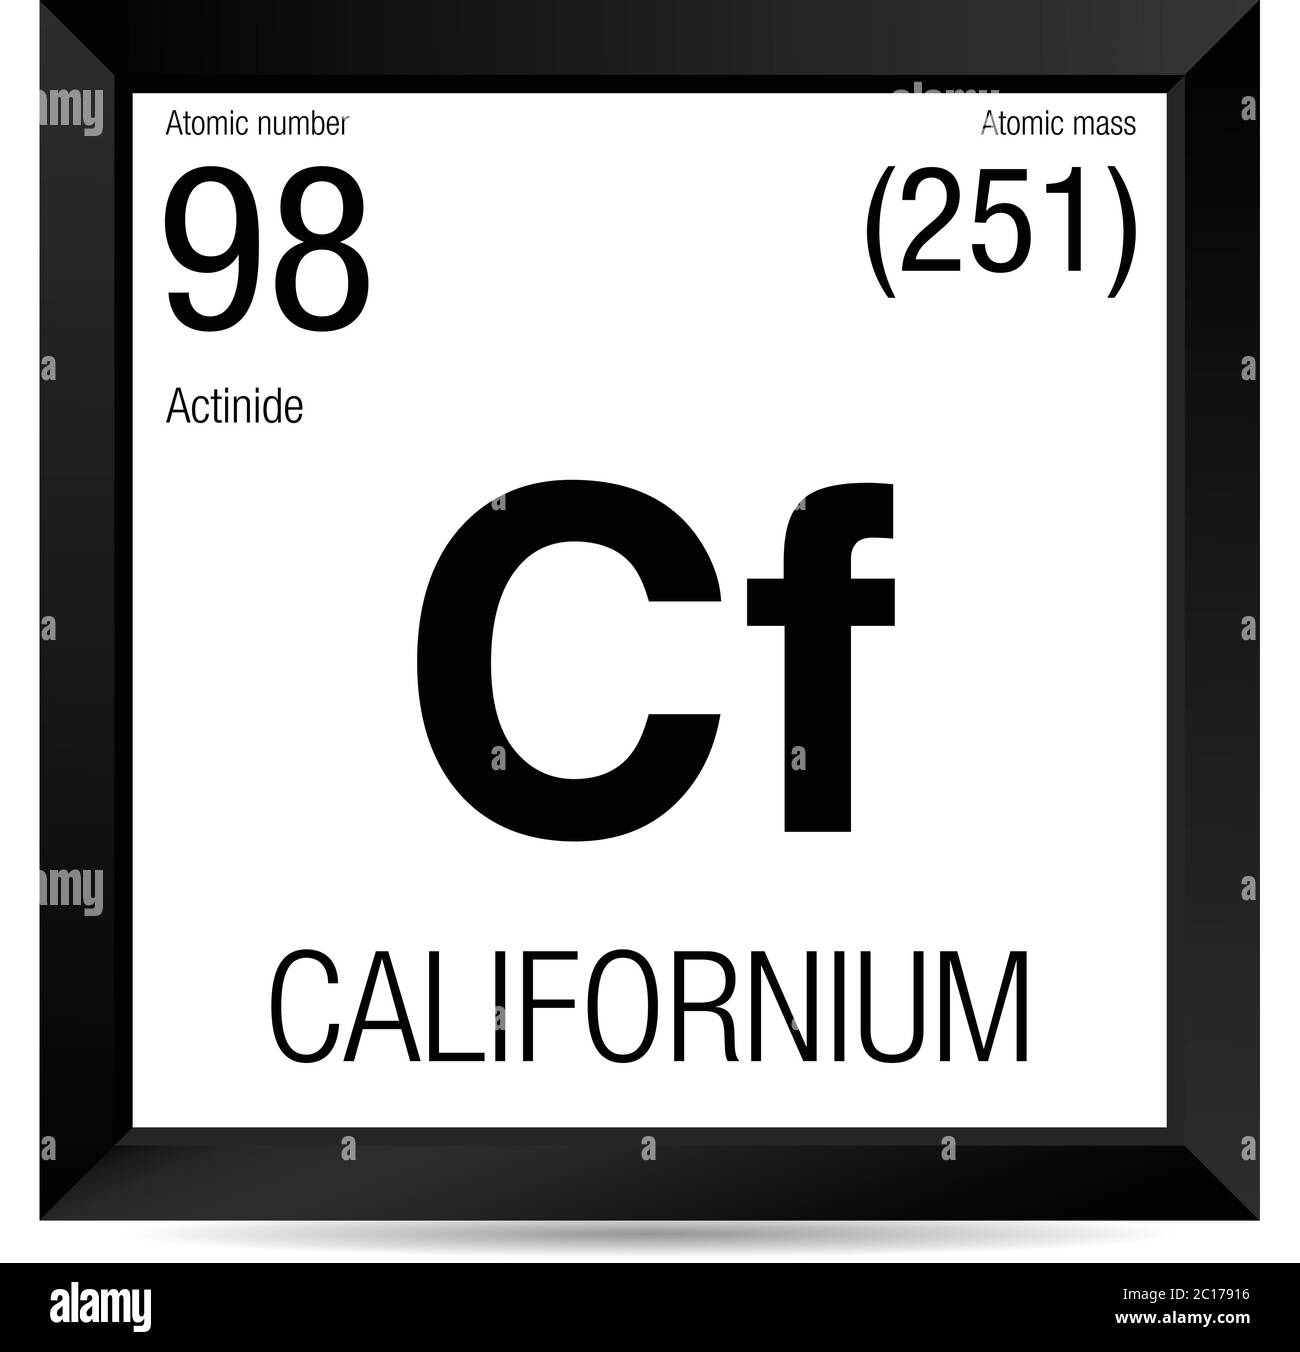 Boum 2 Avril 2022 Symbole-de-californium-element-numero-98-du-tableau-periodique-des-elements-chimie-cadre-carre-noir-avec-fond-blanc-2c17916